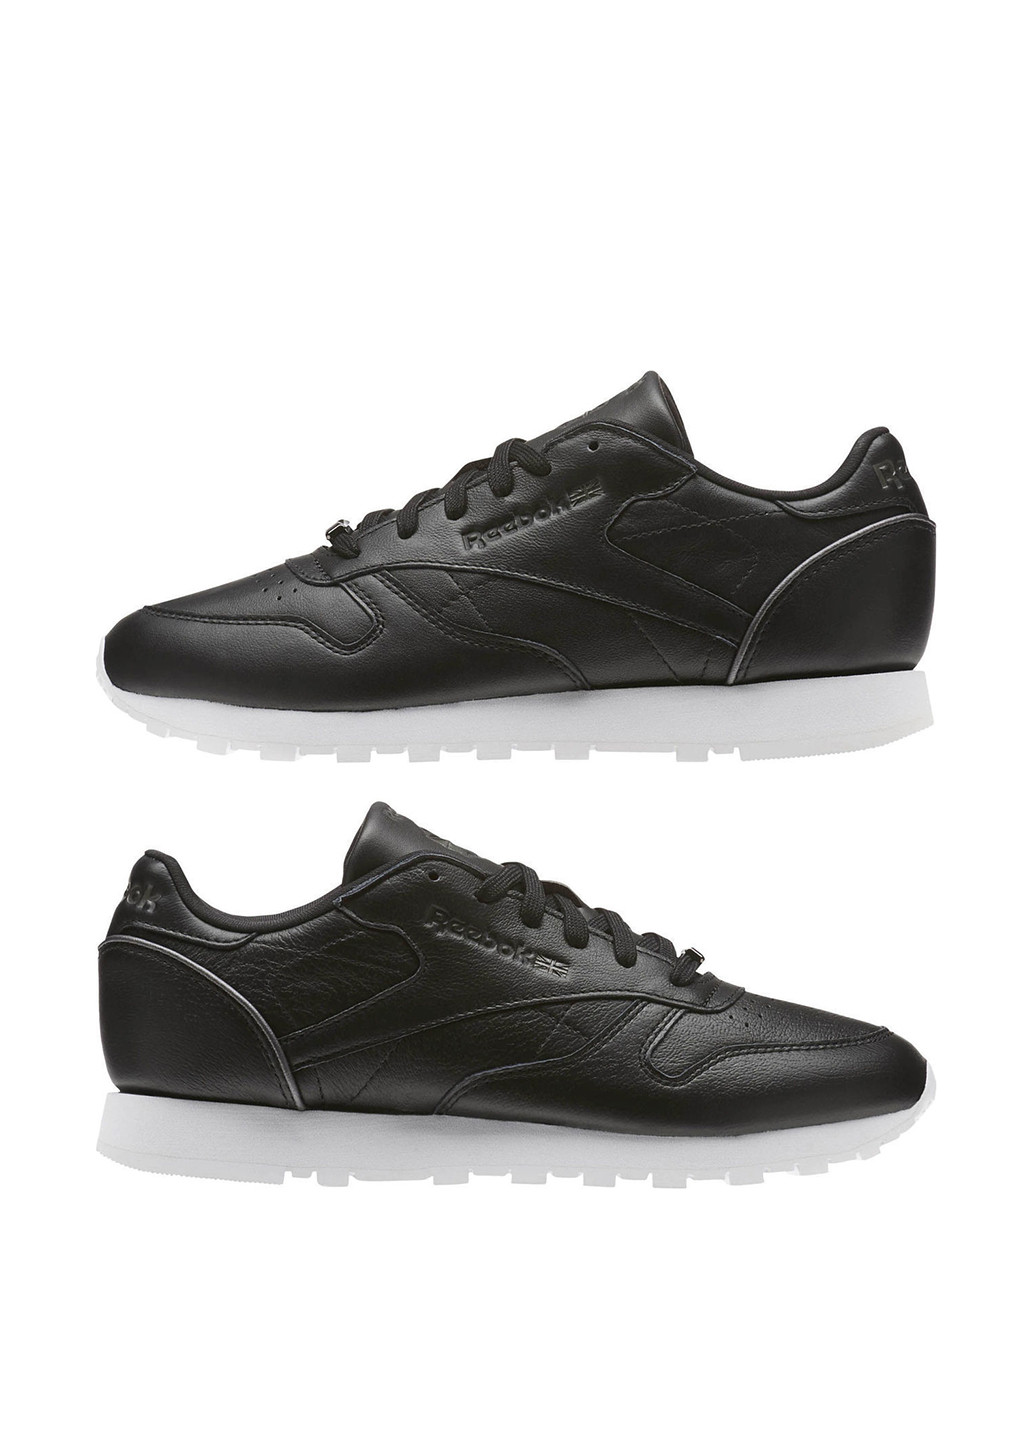 Черные демисезонные кроссовки Reebok Classic Leather HW